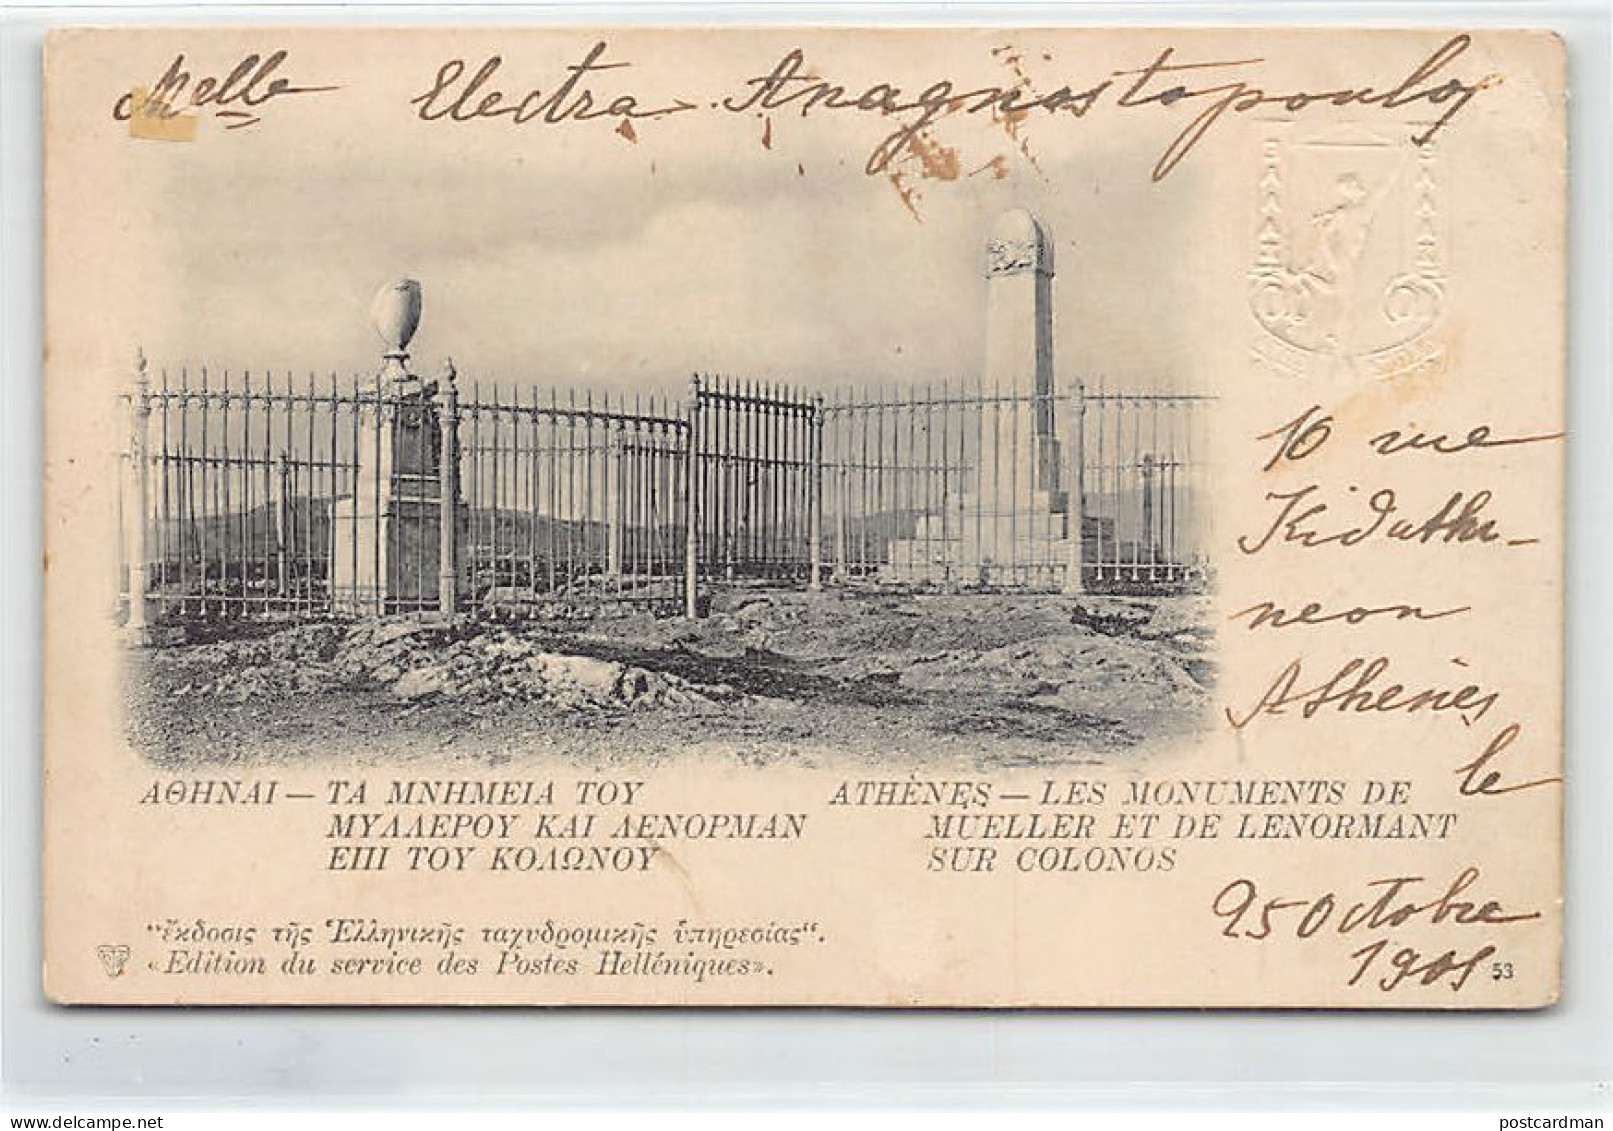 Greece - ATHENS - Lenormant And Müller Monuments In Kolonos - Publ. Service Des Postes Hélleniques 53 - Griechenland